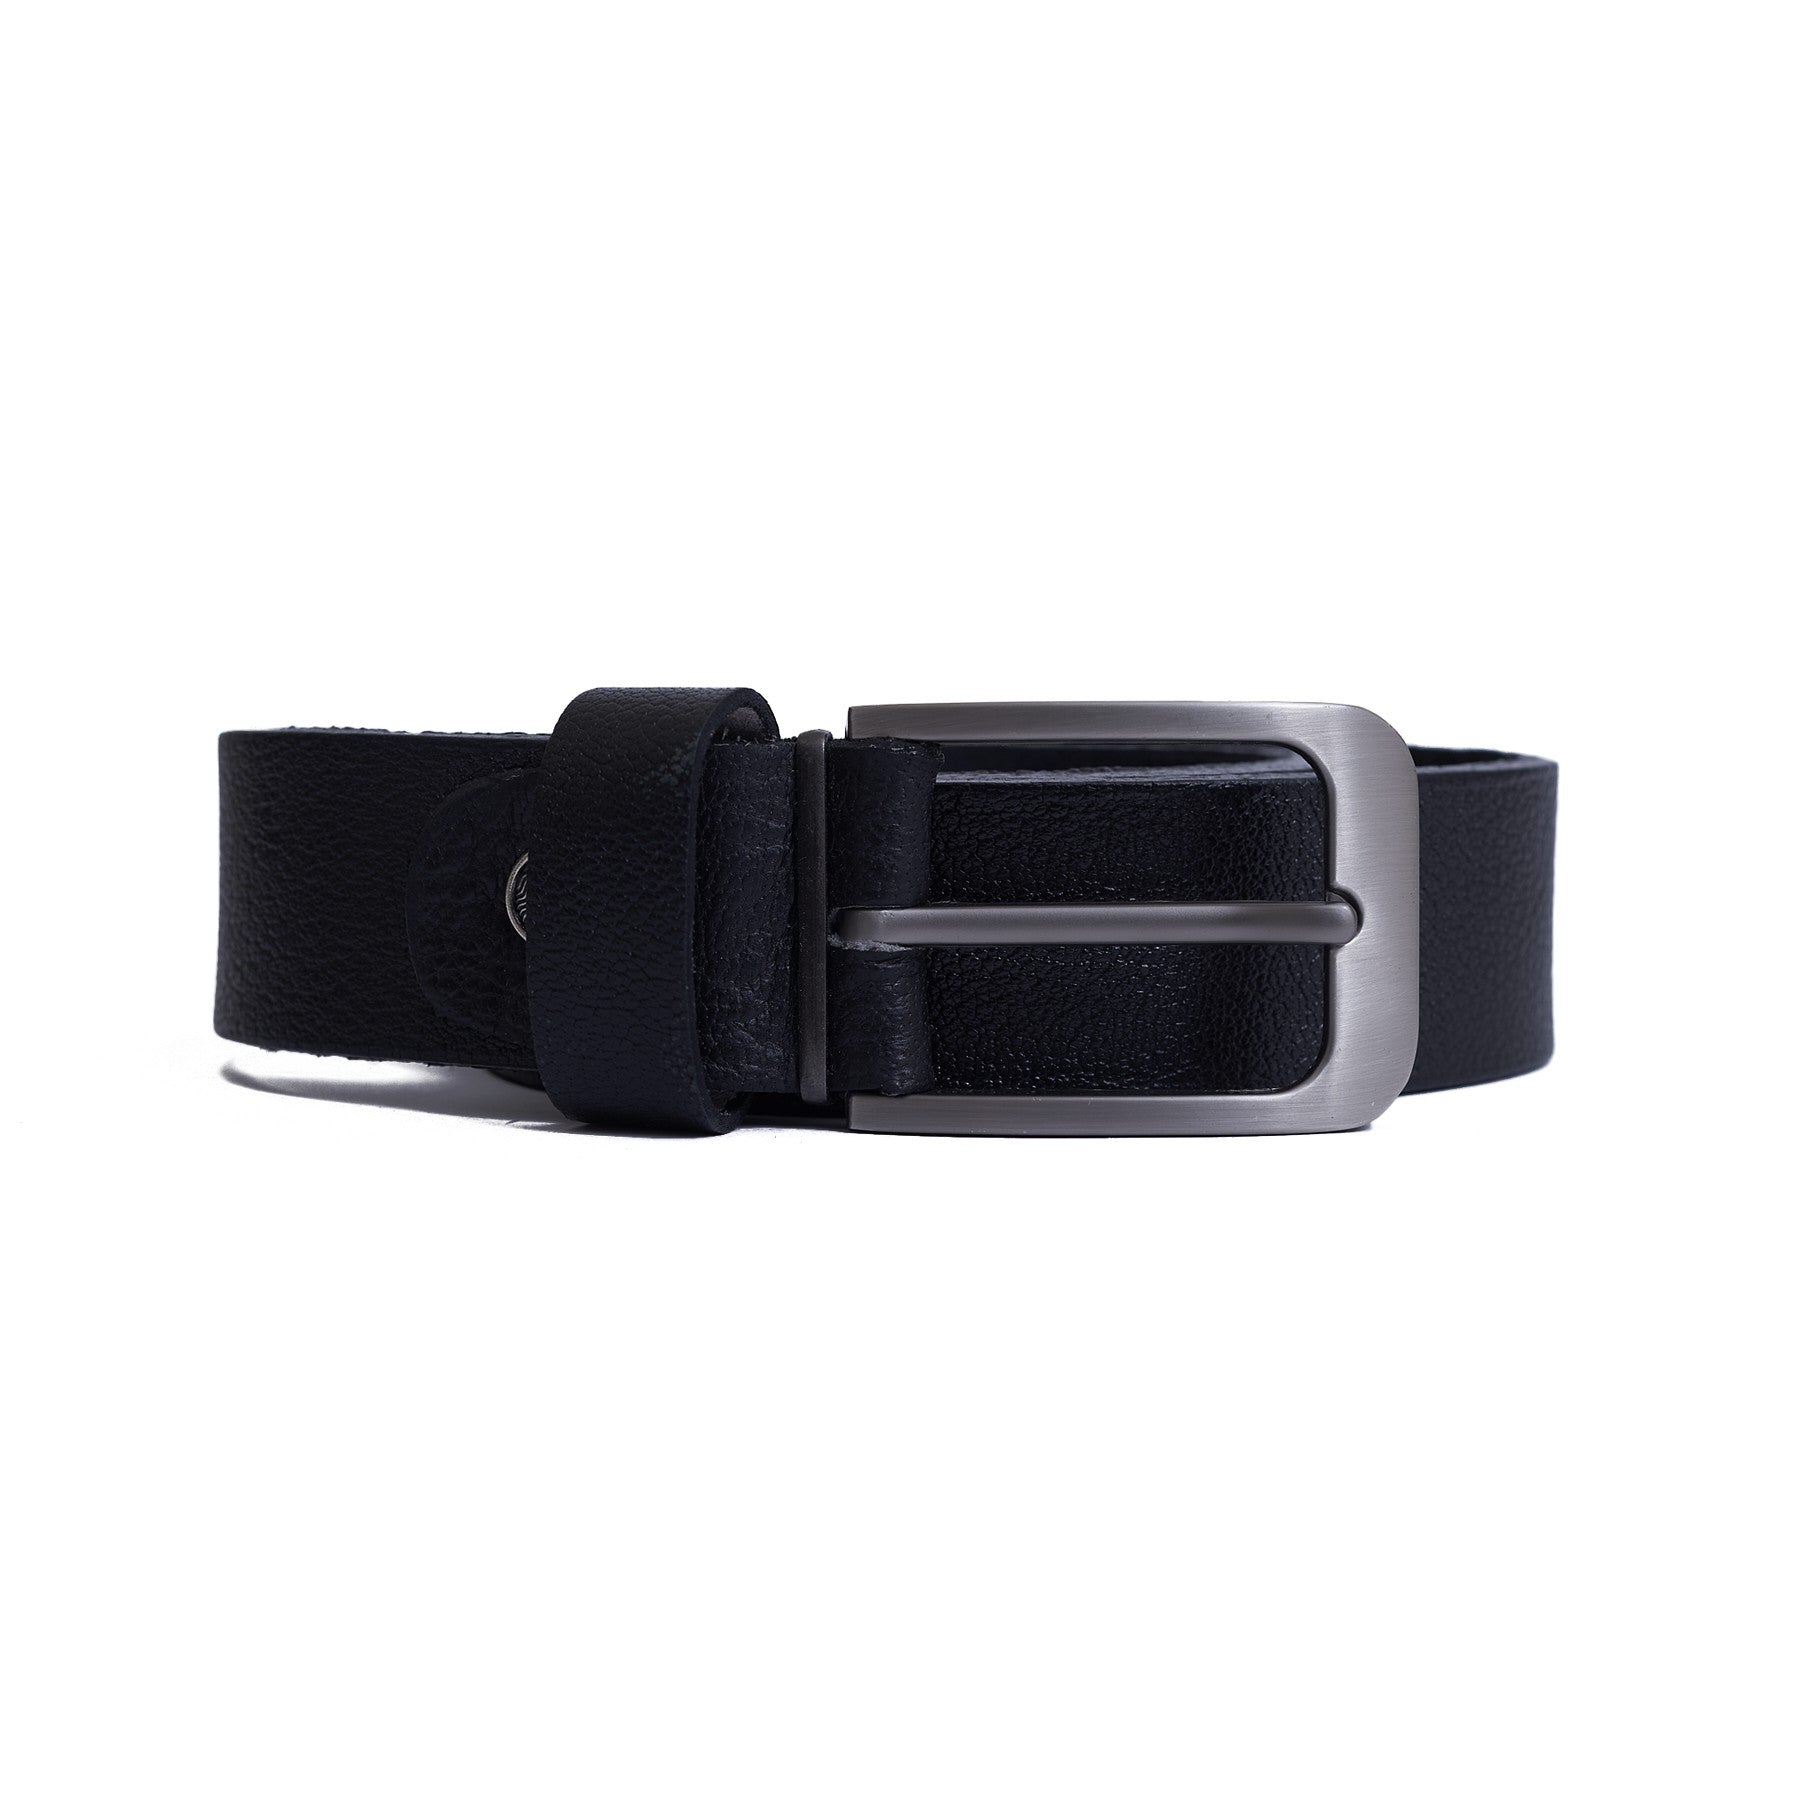 3.5 CM Crushed genuine leather Belt - Super Lux  - Black Color Model B7202